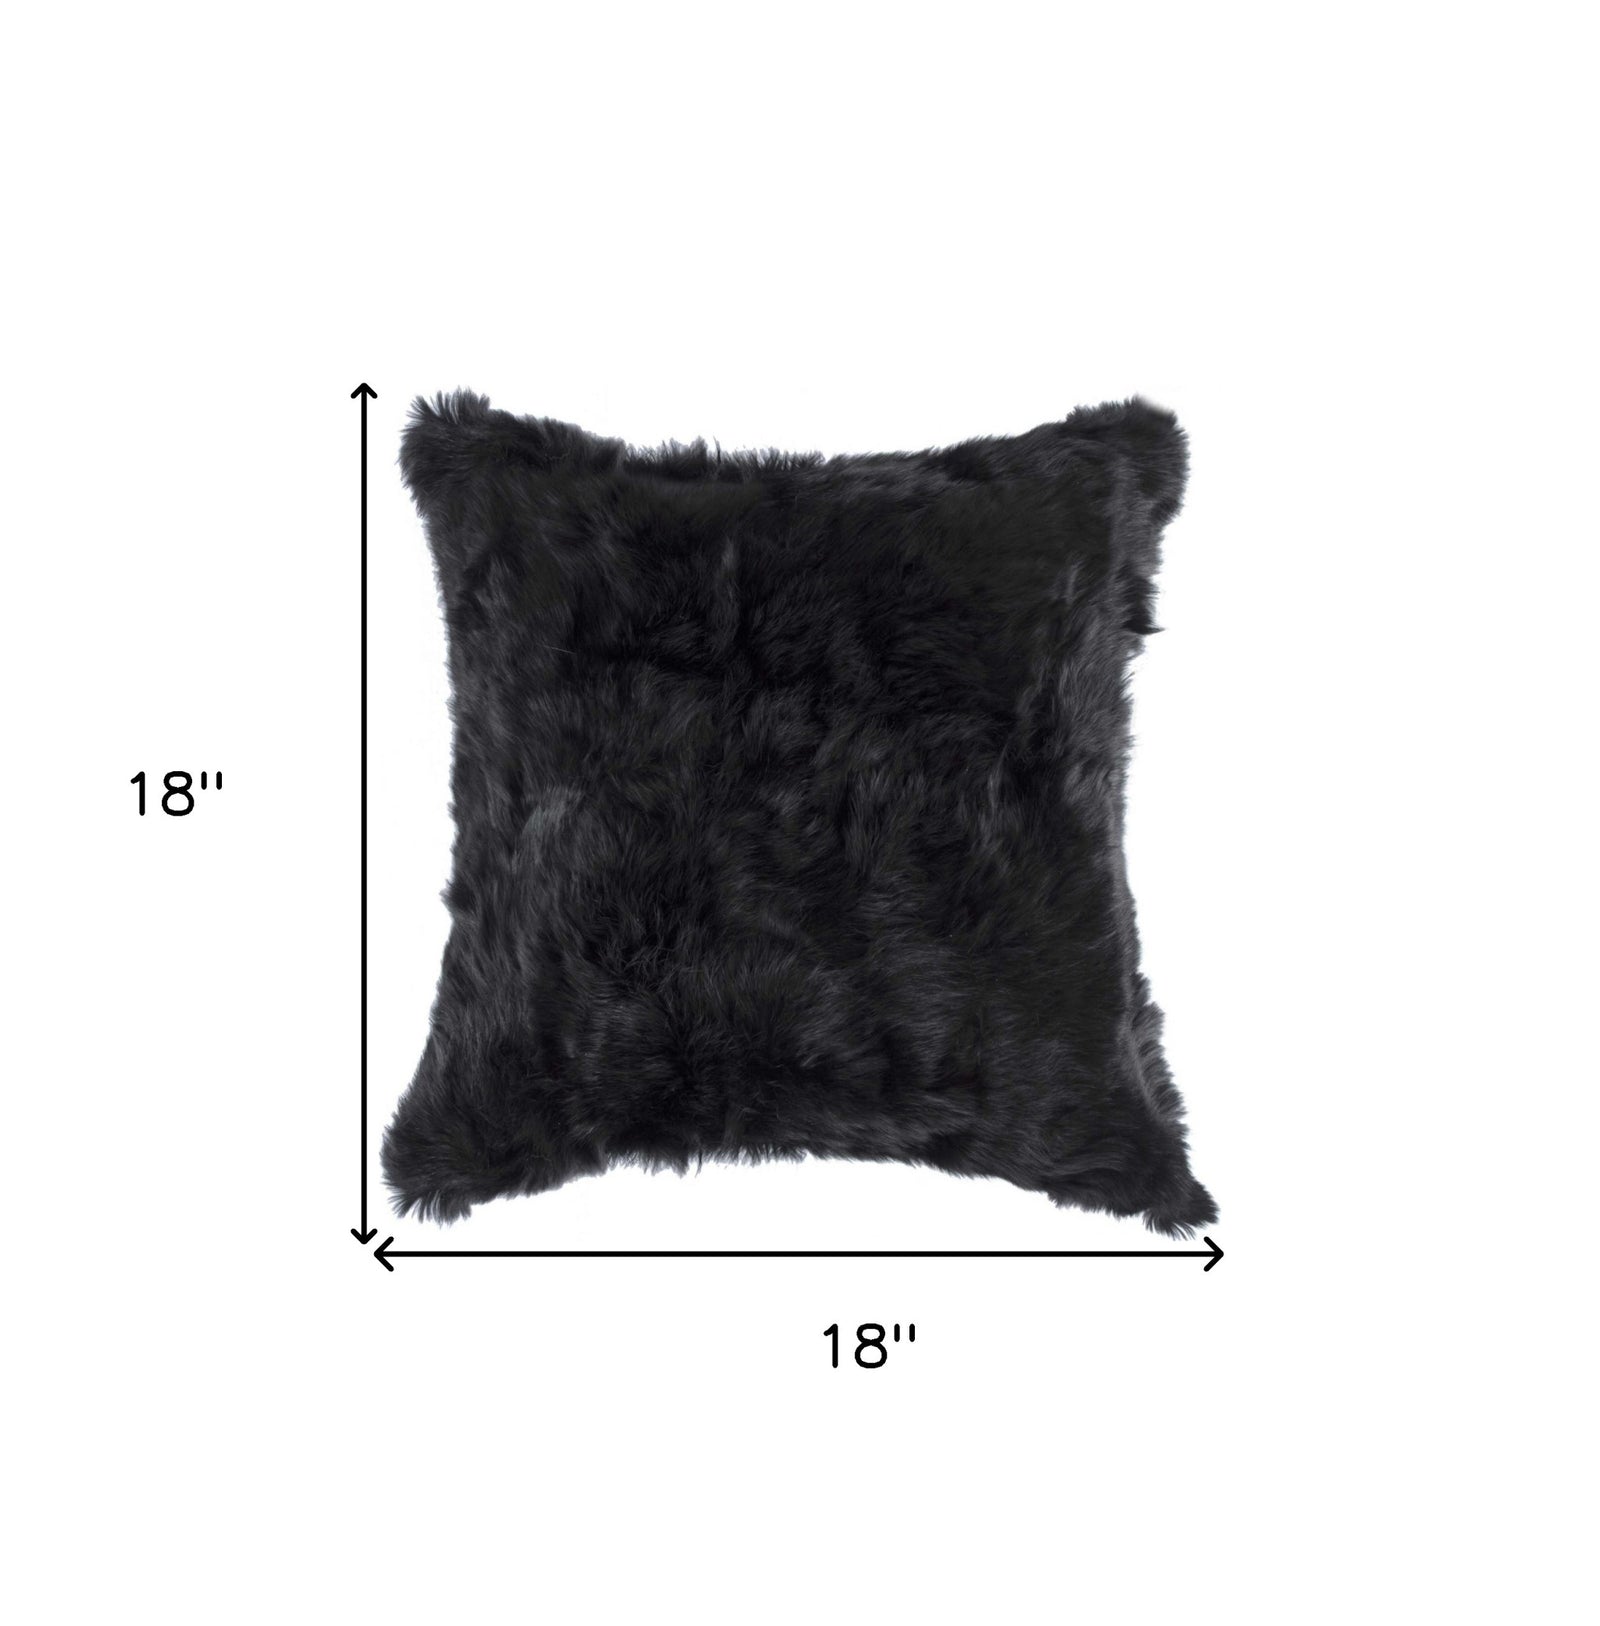 5" X 18" X 18" 100% Natural Rabbit Fur Black Pillow